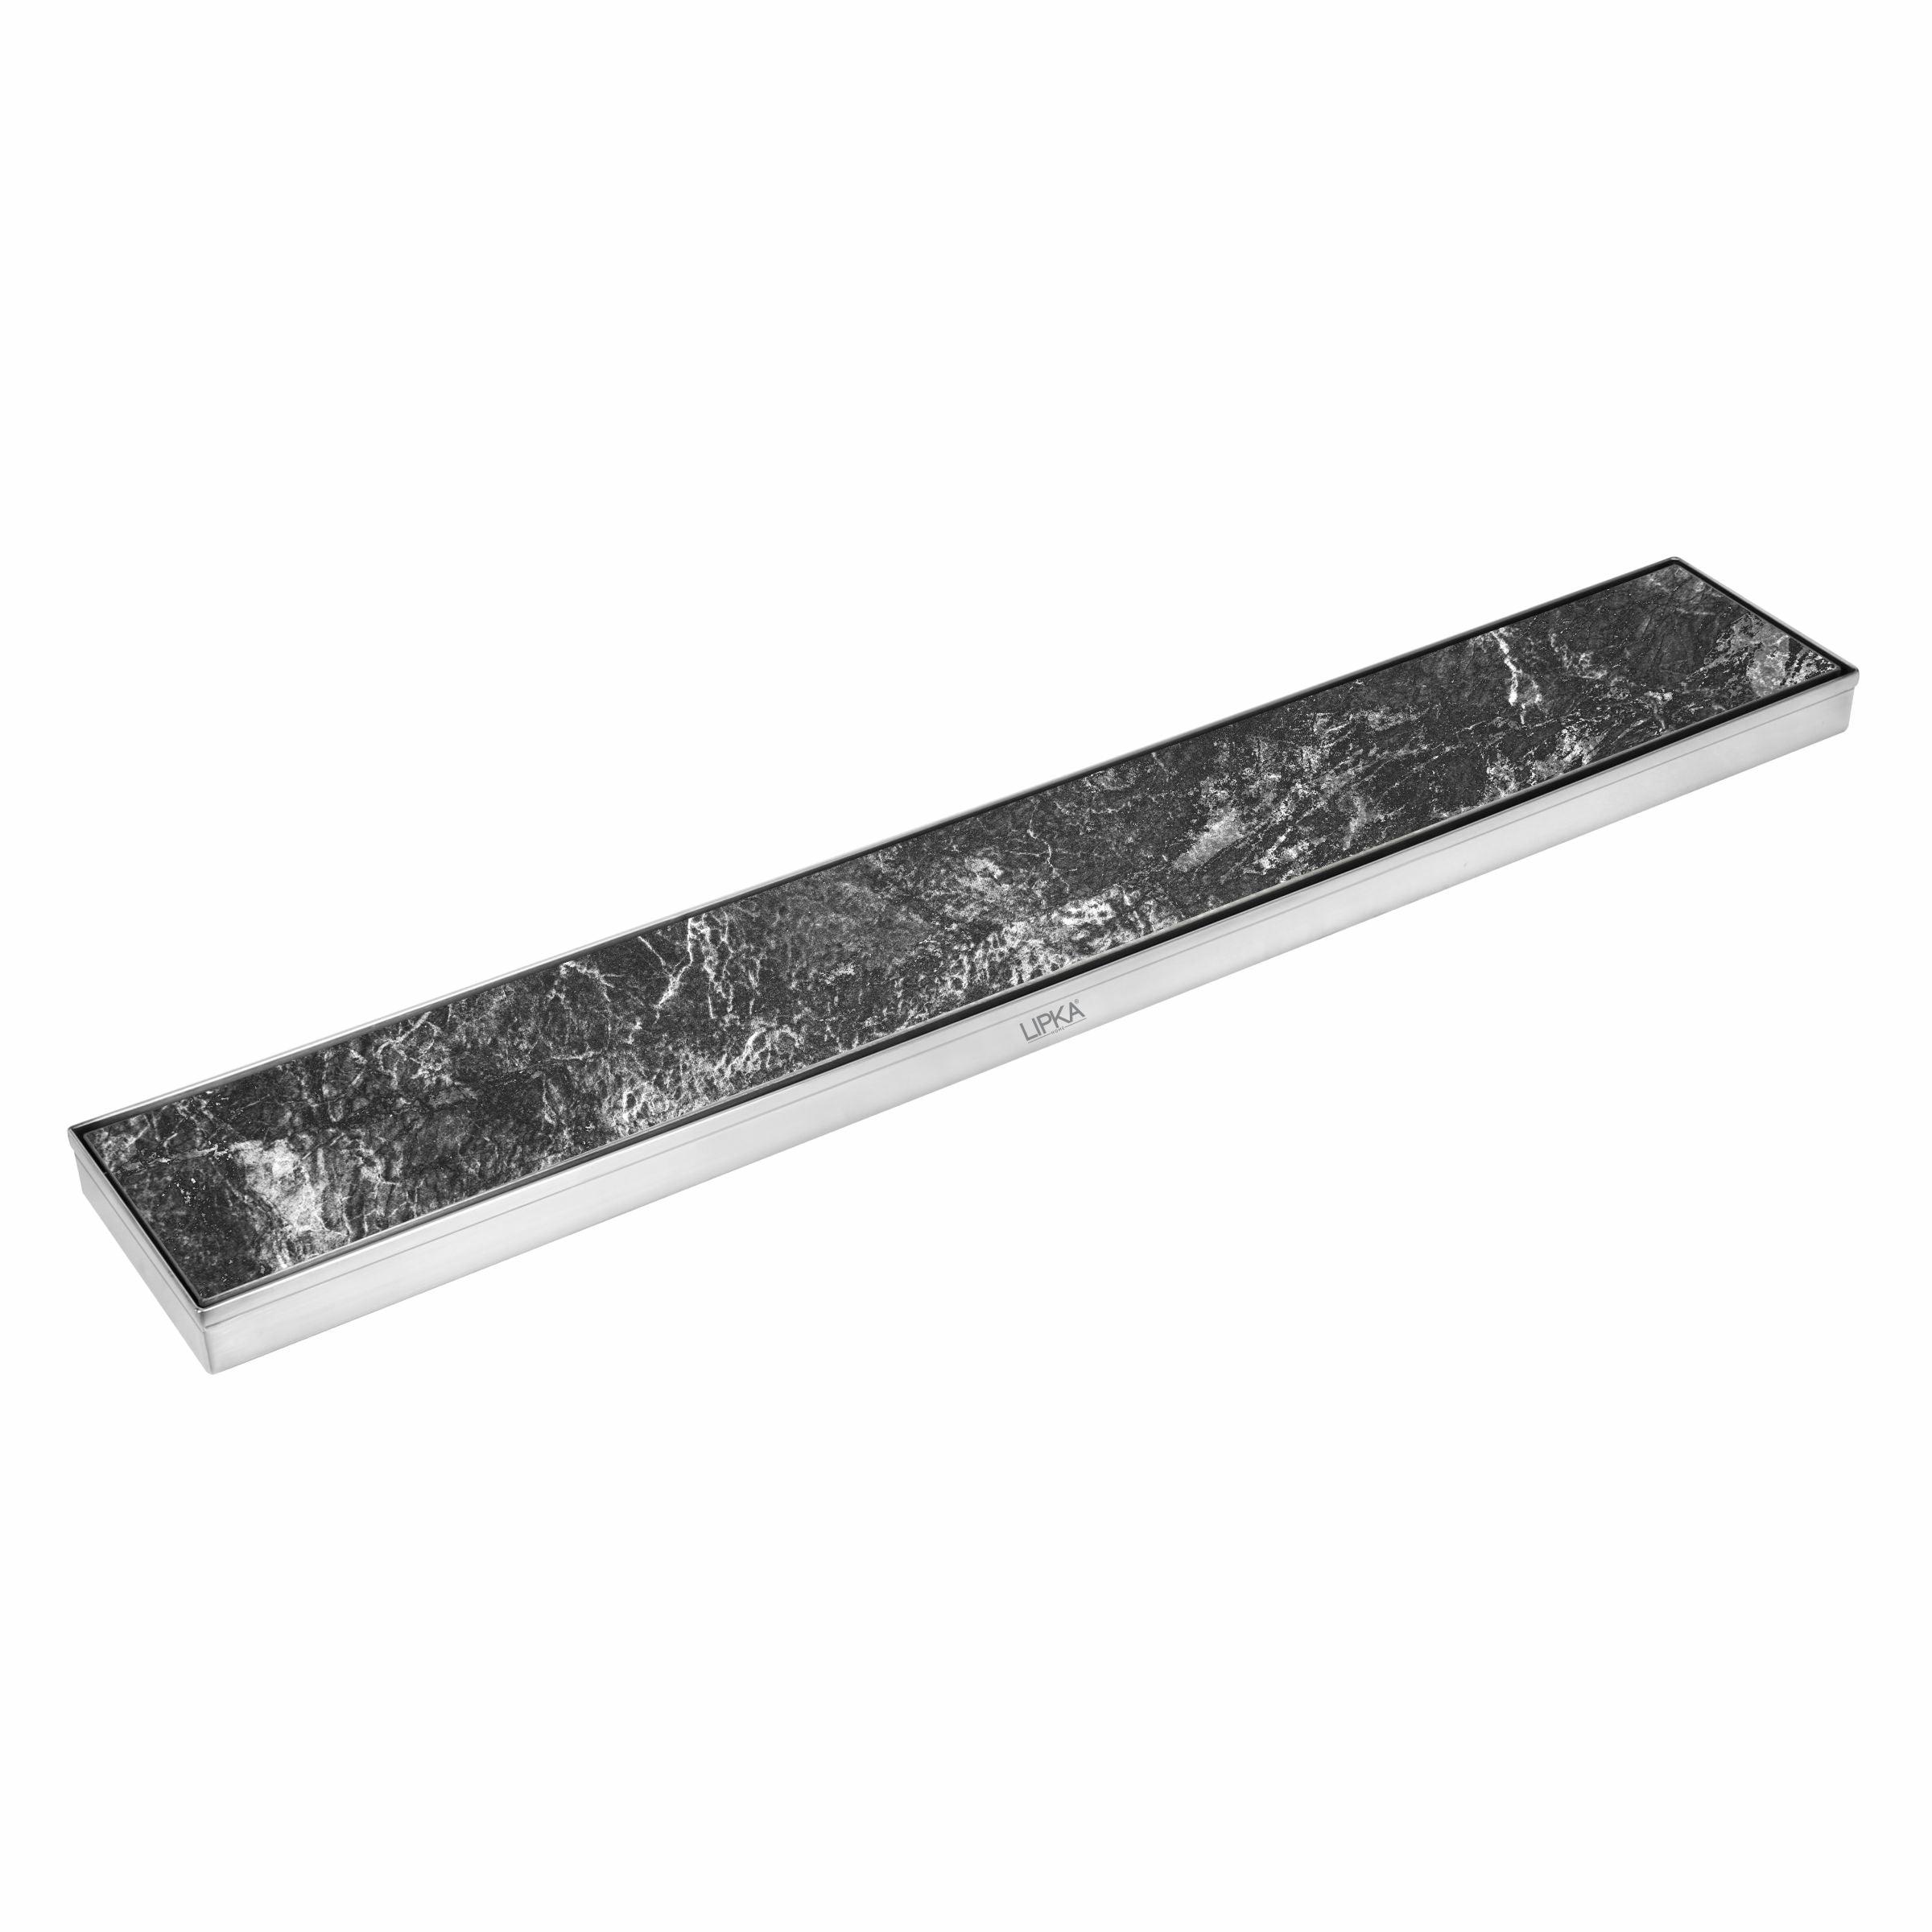 Tile Insert Shower Drain Channel (48 x 4 Inches) - LIPKA - Lipka Home